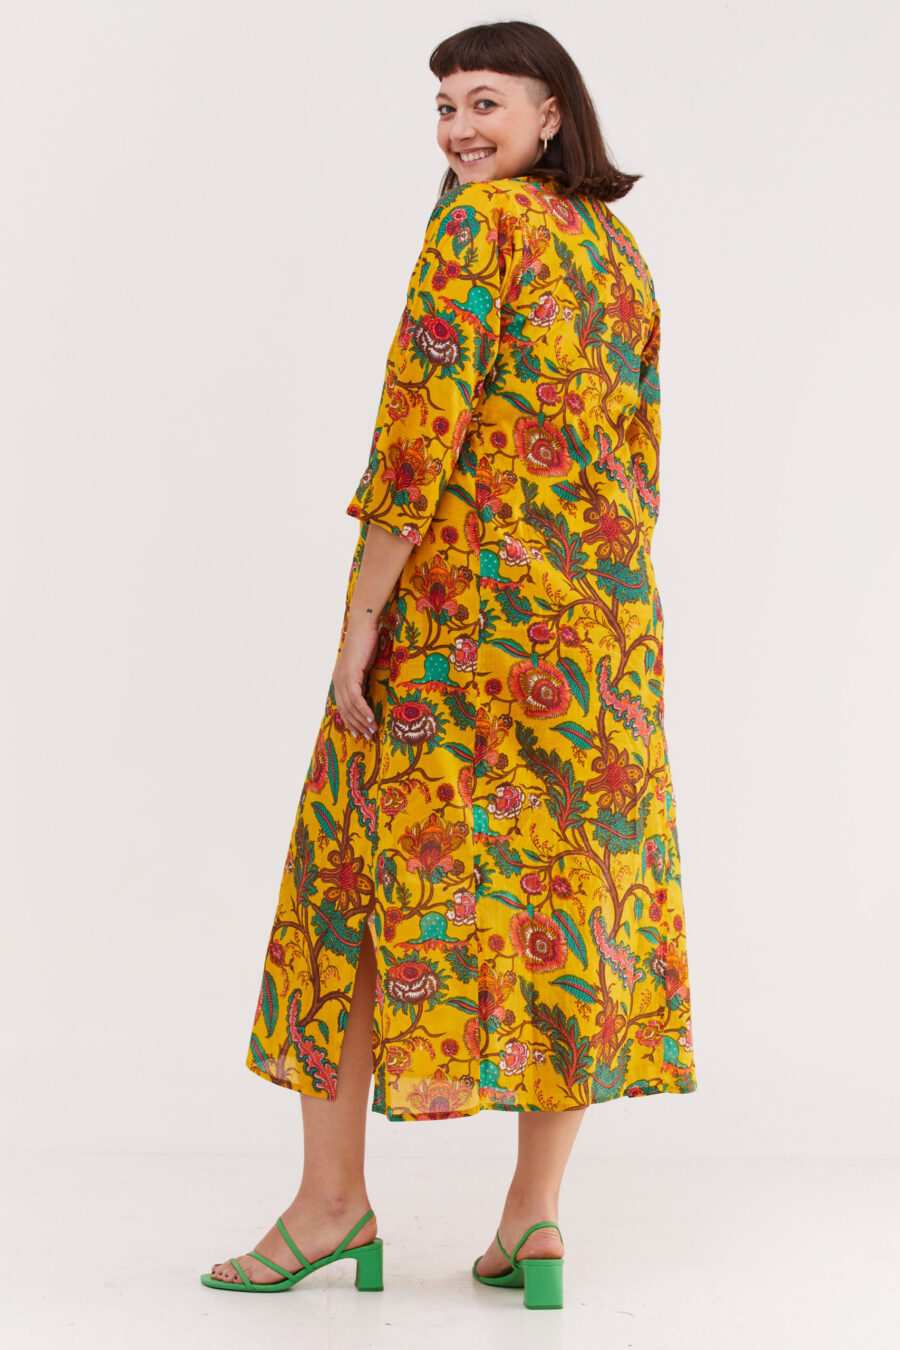 גלביה לנשים | גלבייה בעיצוב ייחודי - הדפס פלורה צהובה, שמלה צהובה עם הדפס פרחוני צבעוני